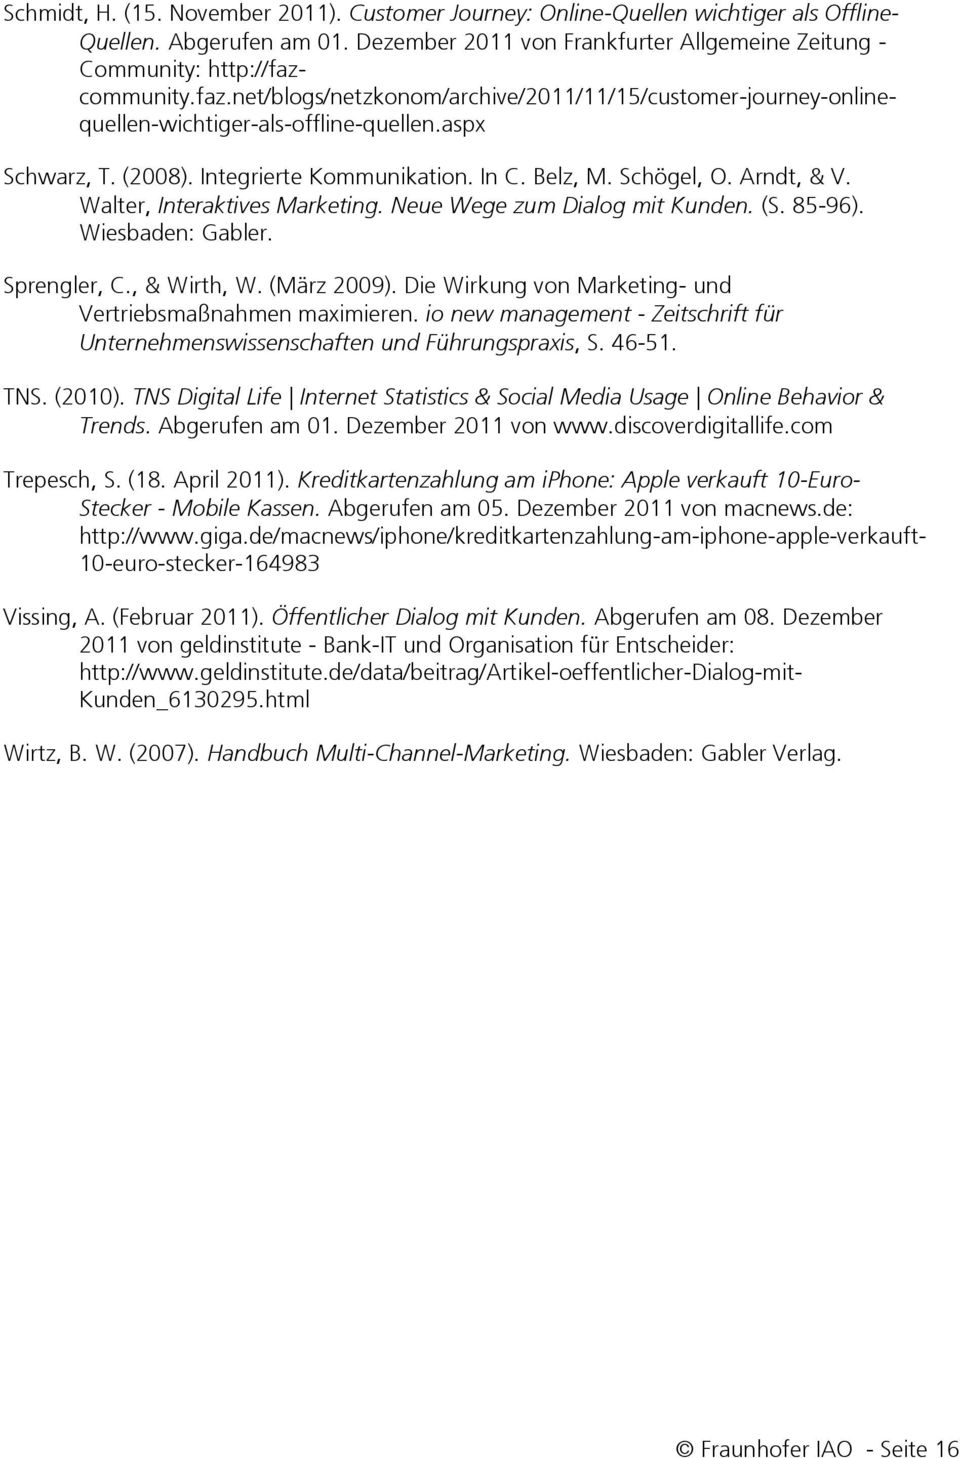 Walter, Interaktives Marketing. Neue Wege zum Dialog mit Kunden. (S. 85-96). Wiesbaden: Gabler. Sprengler, C., & Wirth, W. (März 2009). Die Wirkung von Marketing- und Vertriebsmaßnahmen maximieren.